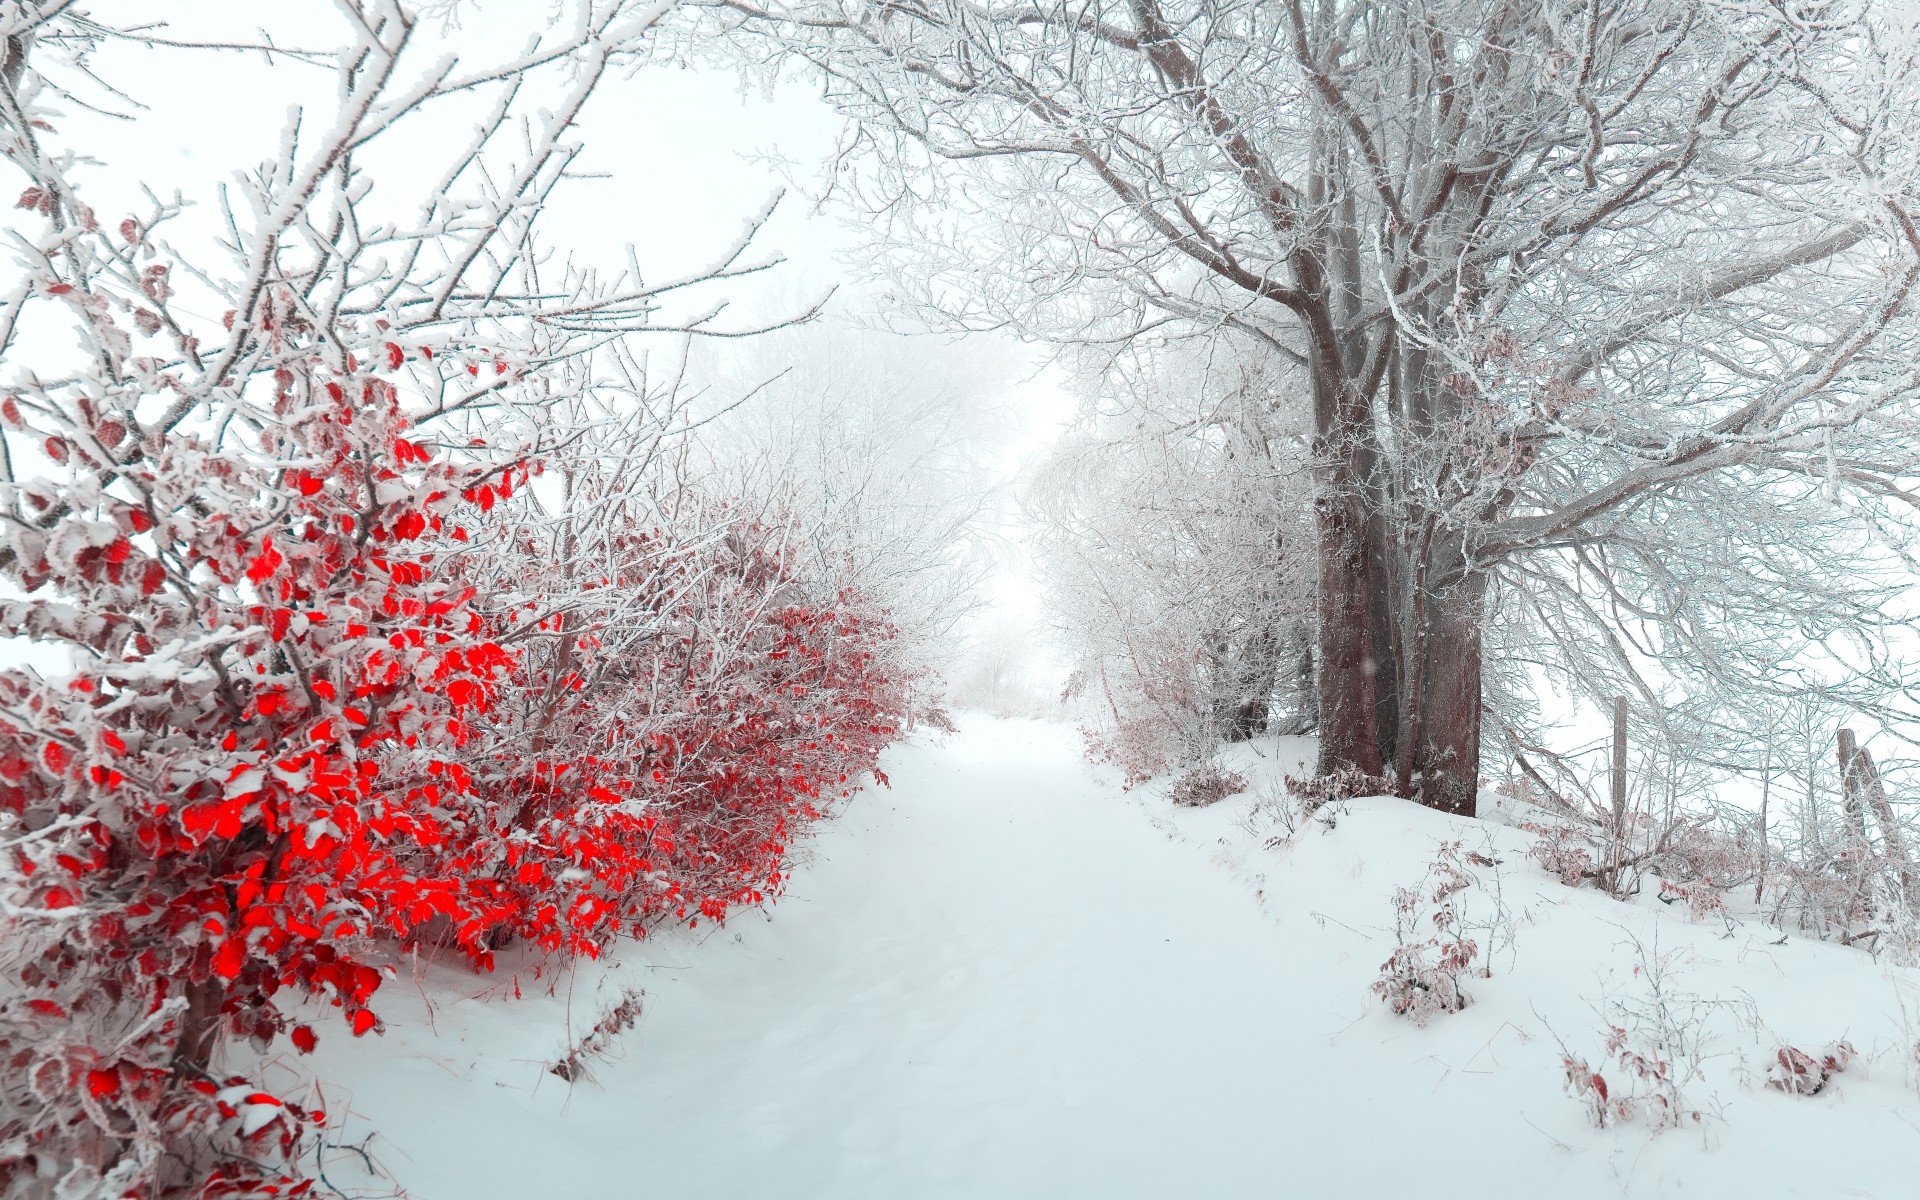 雪と赤い葉のコントラスト